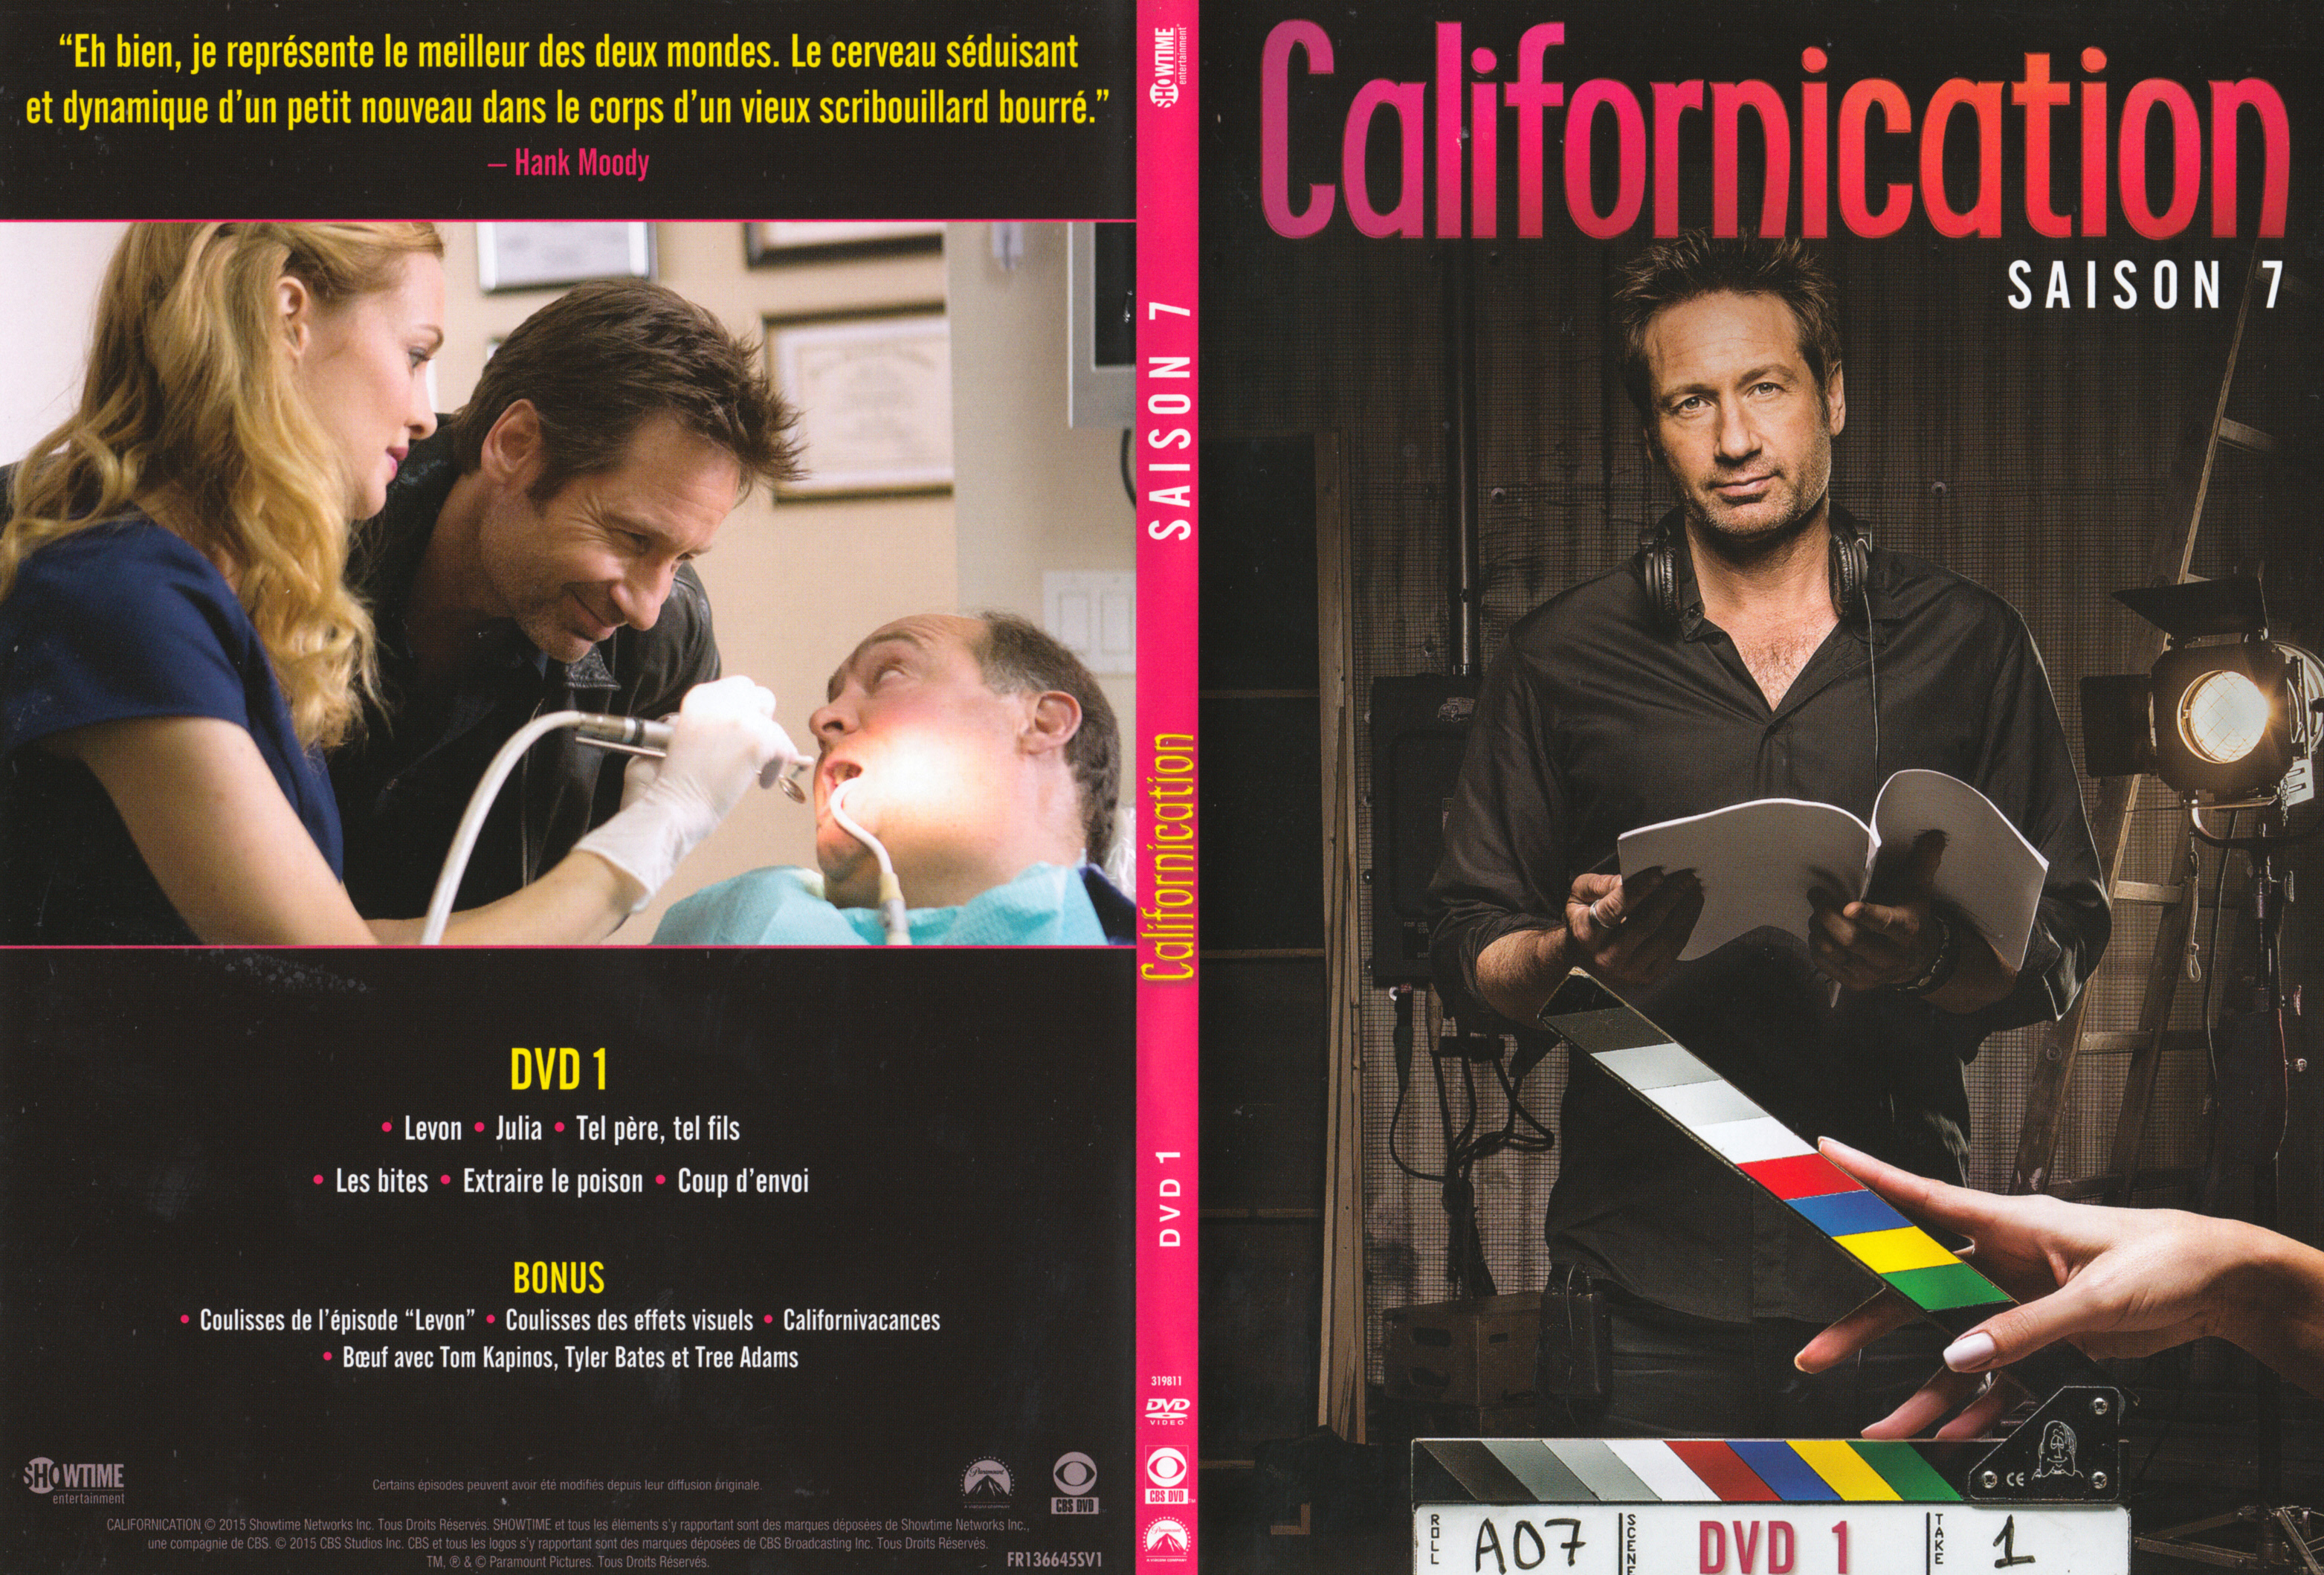 Jaquette DVD Californication Saison 7 DVD 1